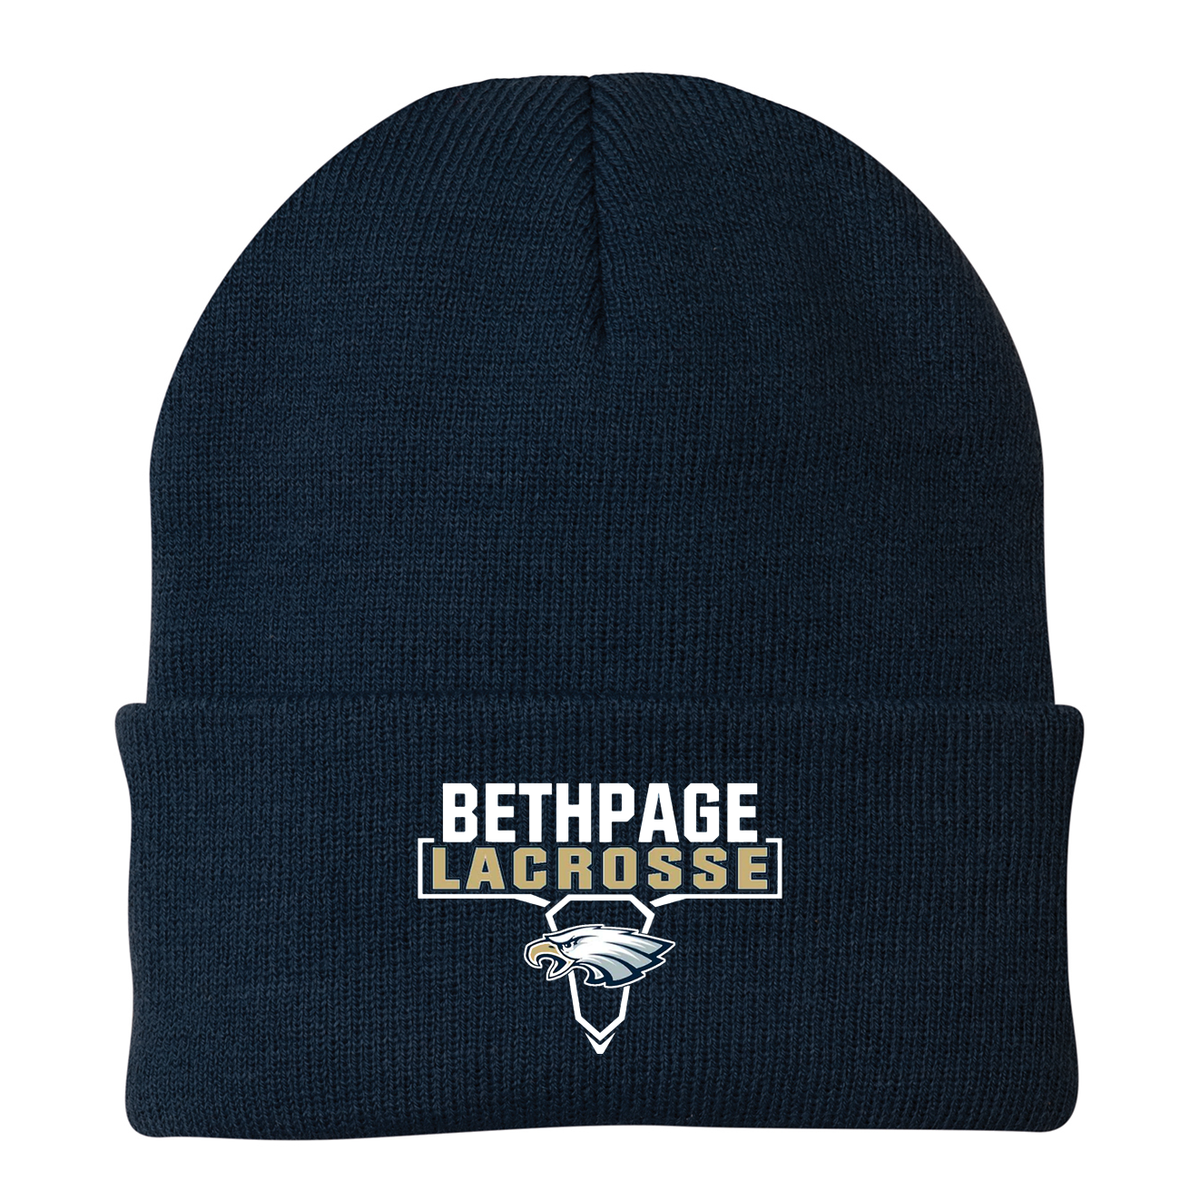 Bethpage Lacrosse Knit Beanie